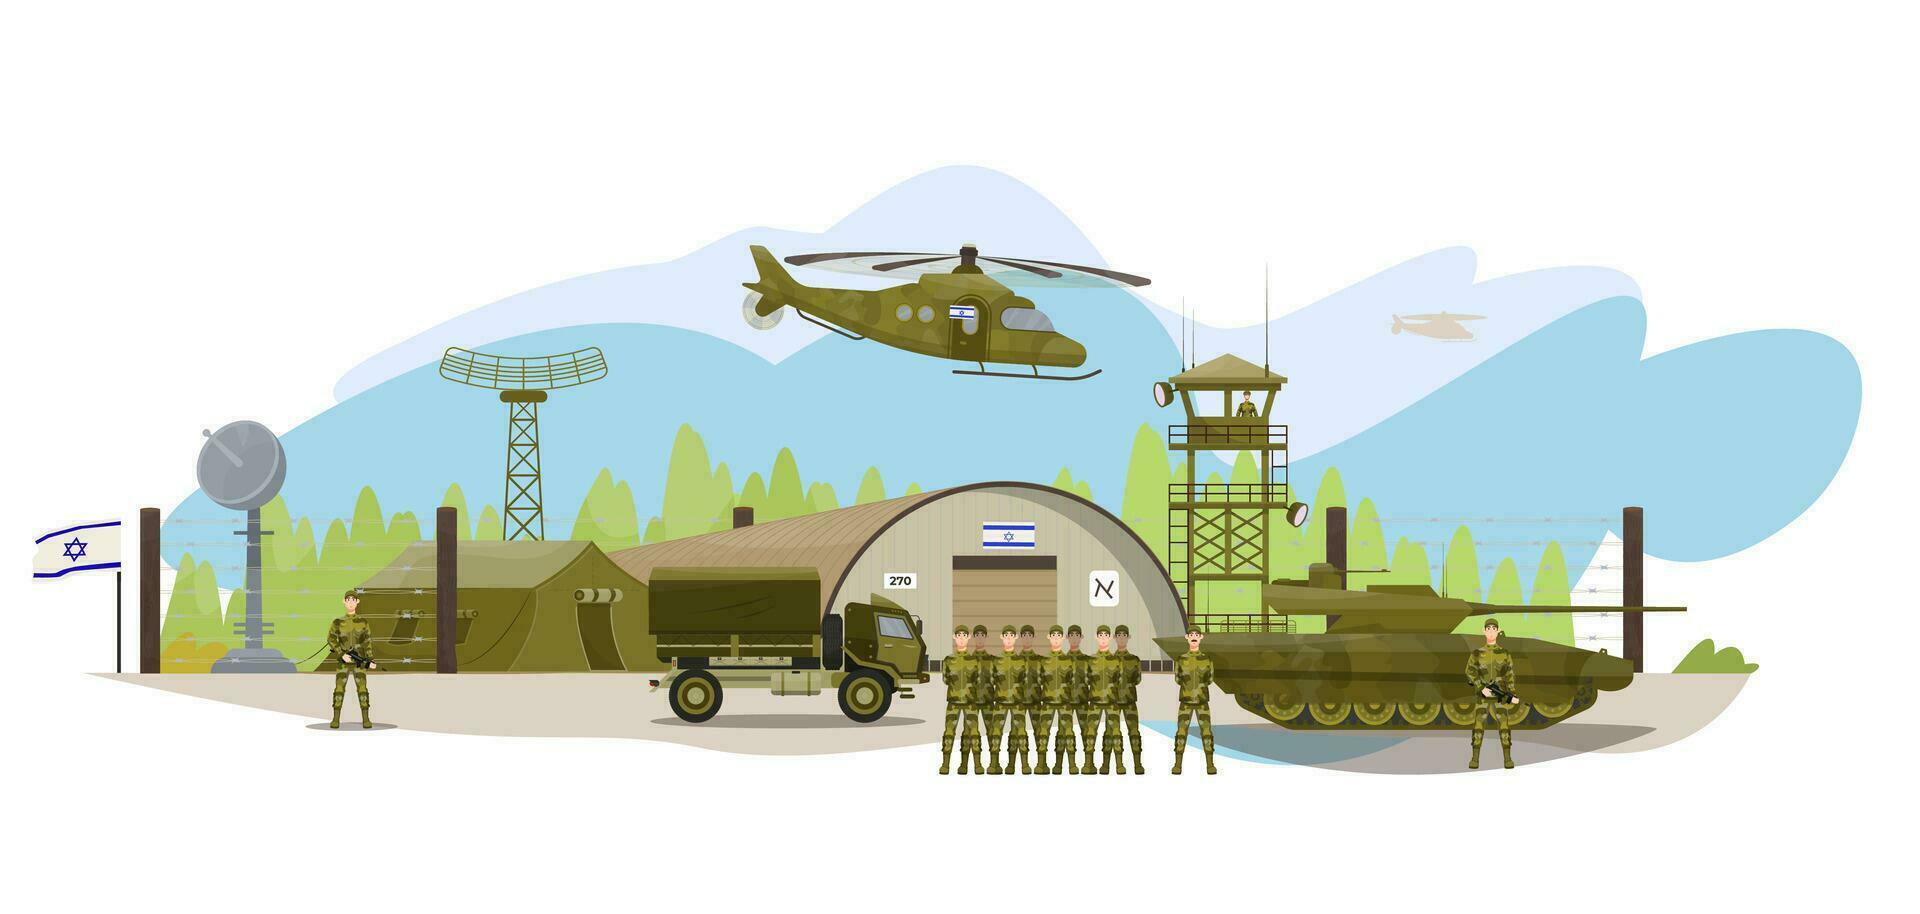 israelisch Militär- Base mit Soldaten, Hubschrauber, Panzer, Zelte, Lager Gebäude, Lastwagen. Mitte Osten Konflikt. Kampf Vorbereitung. vektor